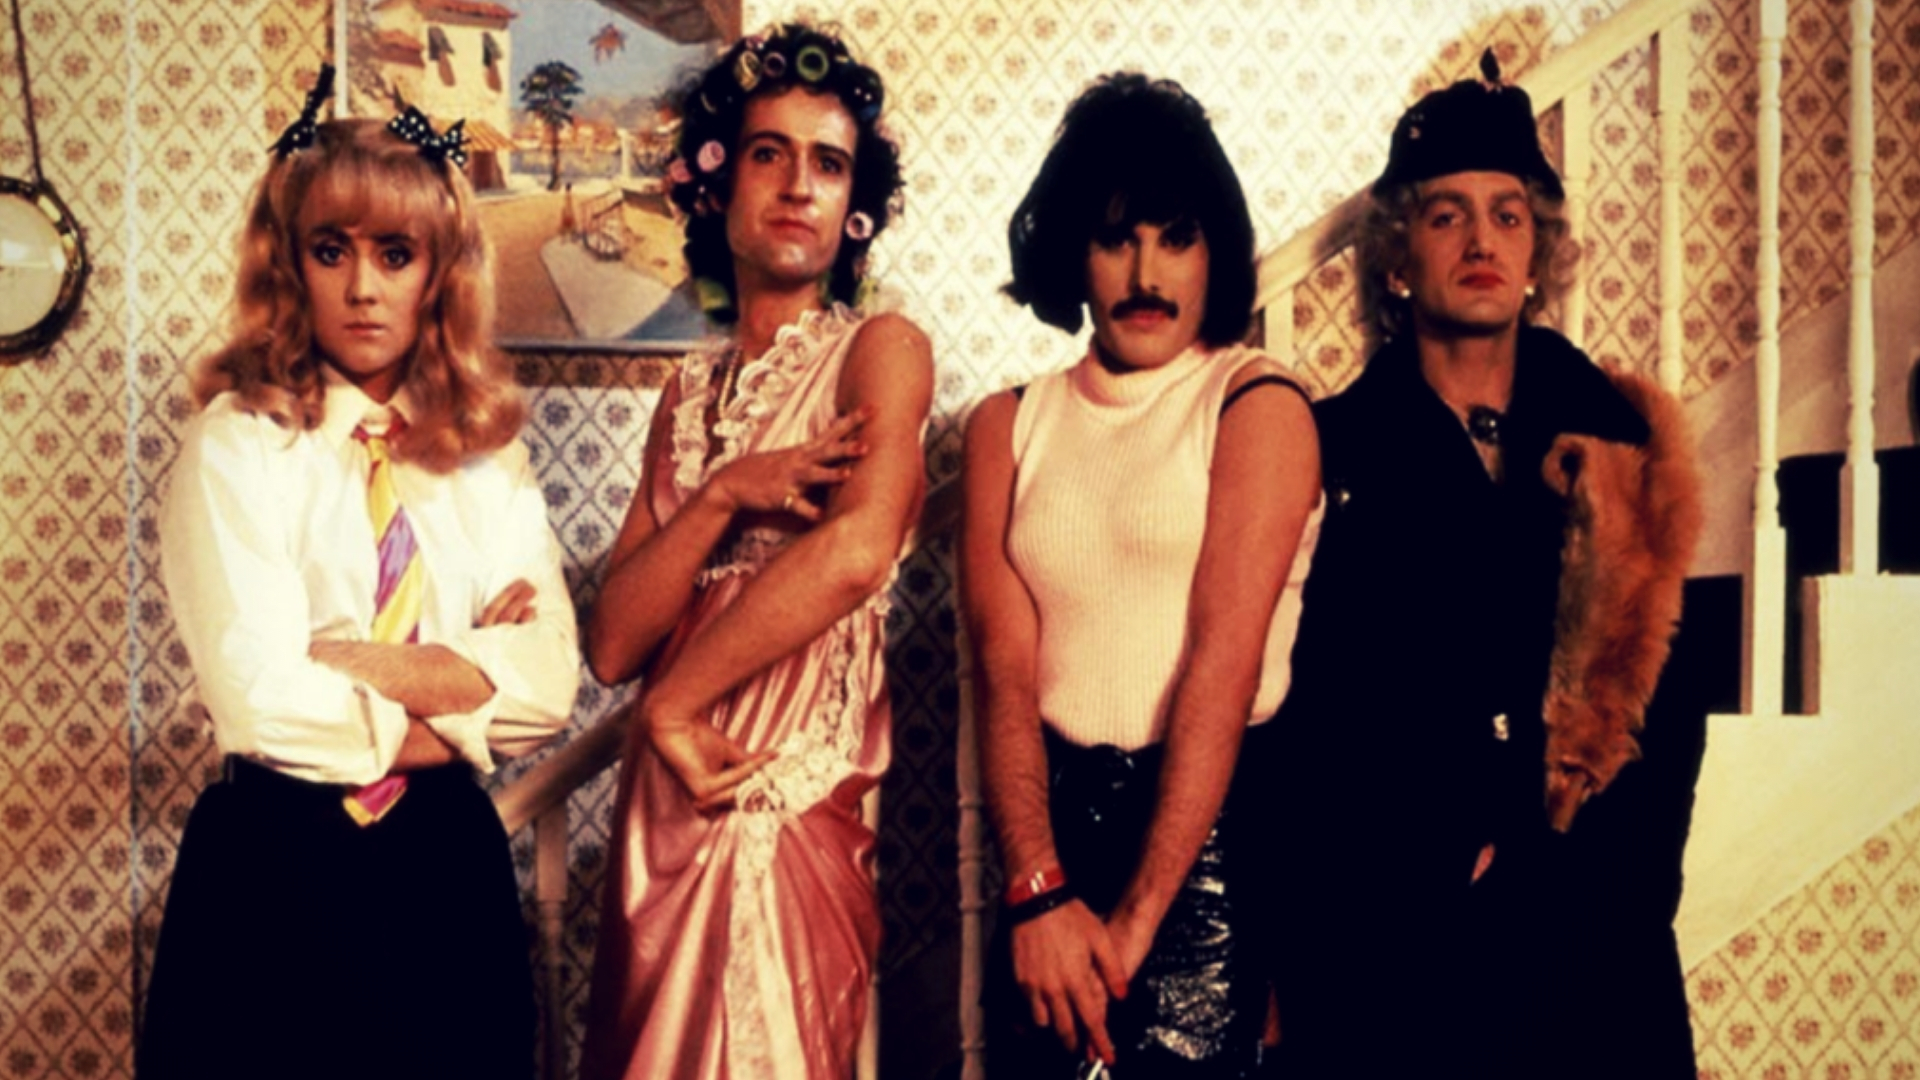 “I Want to Break Free”: la storia del videoclip dei Queen bandito nelle tv americane per 7 anni